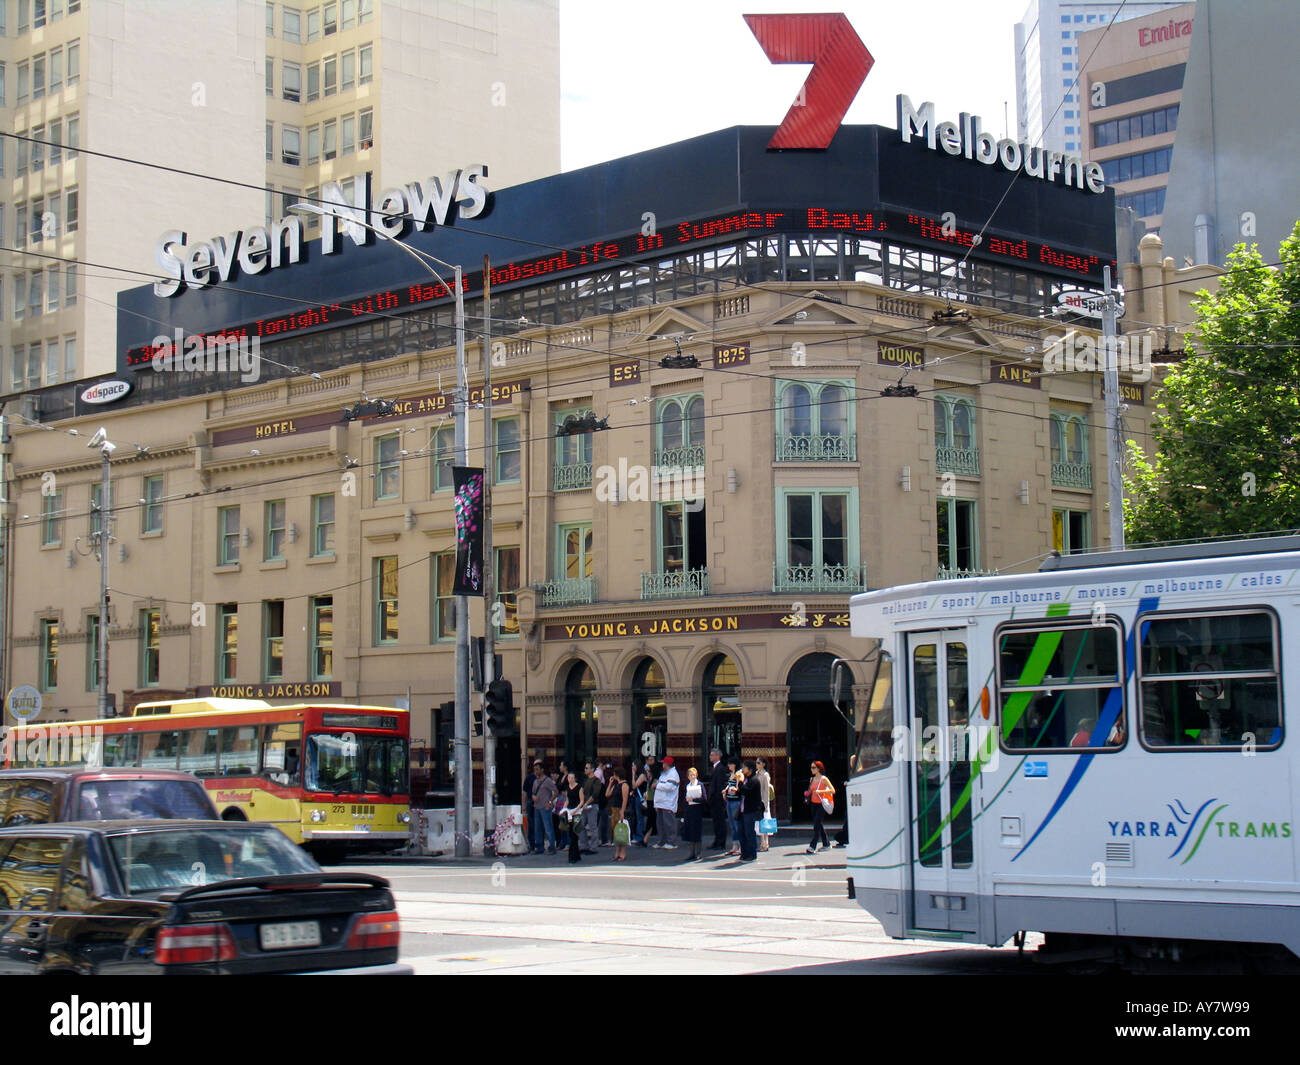 Landmark Hotel and public house Young & Jackson lors de Swanston et de Flinders streets Victoria Melbourne Australie Banque D'Images